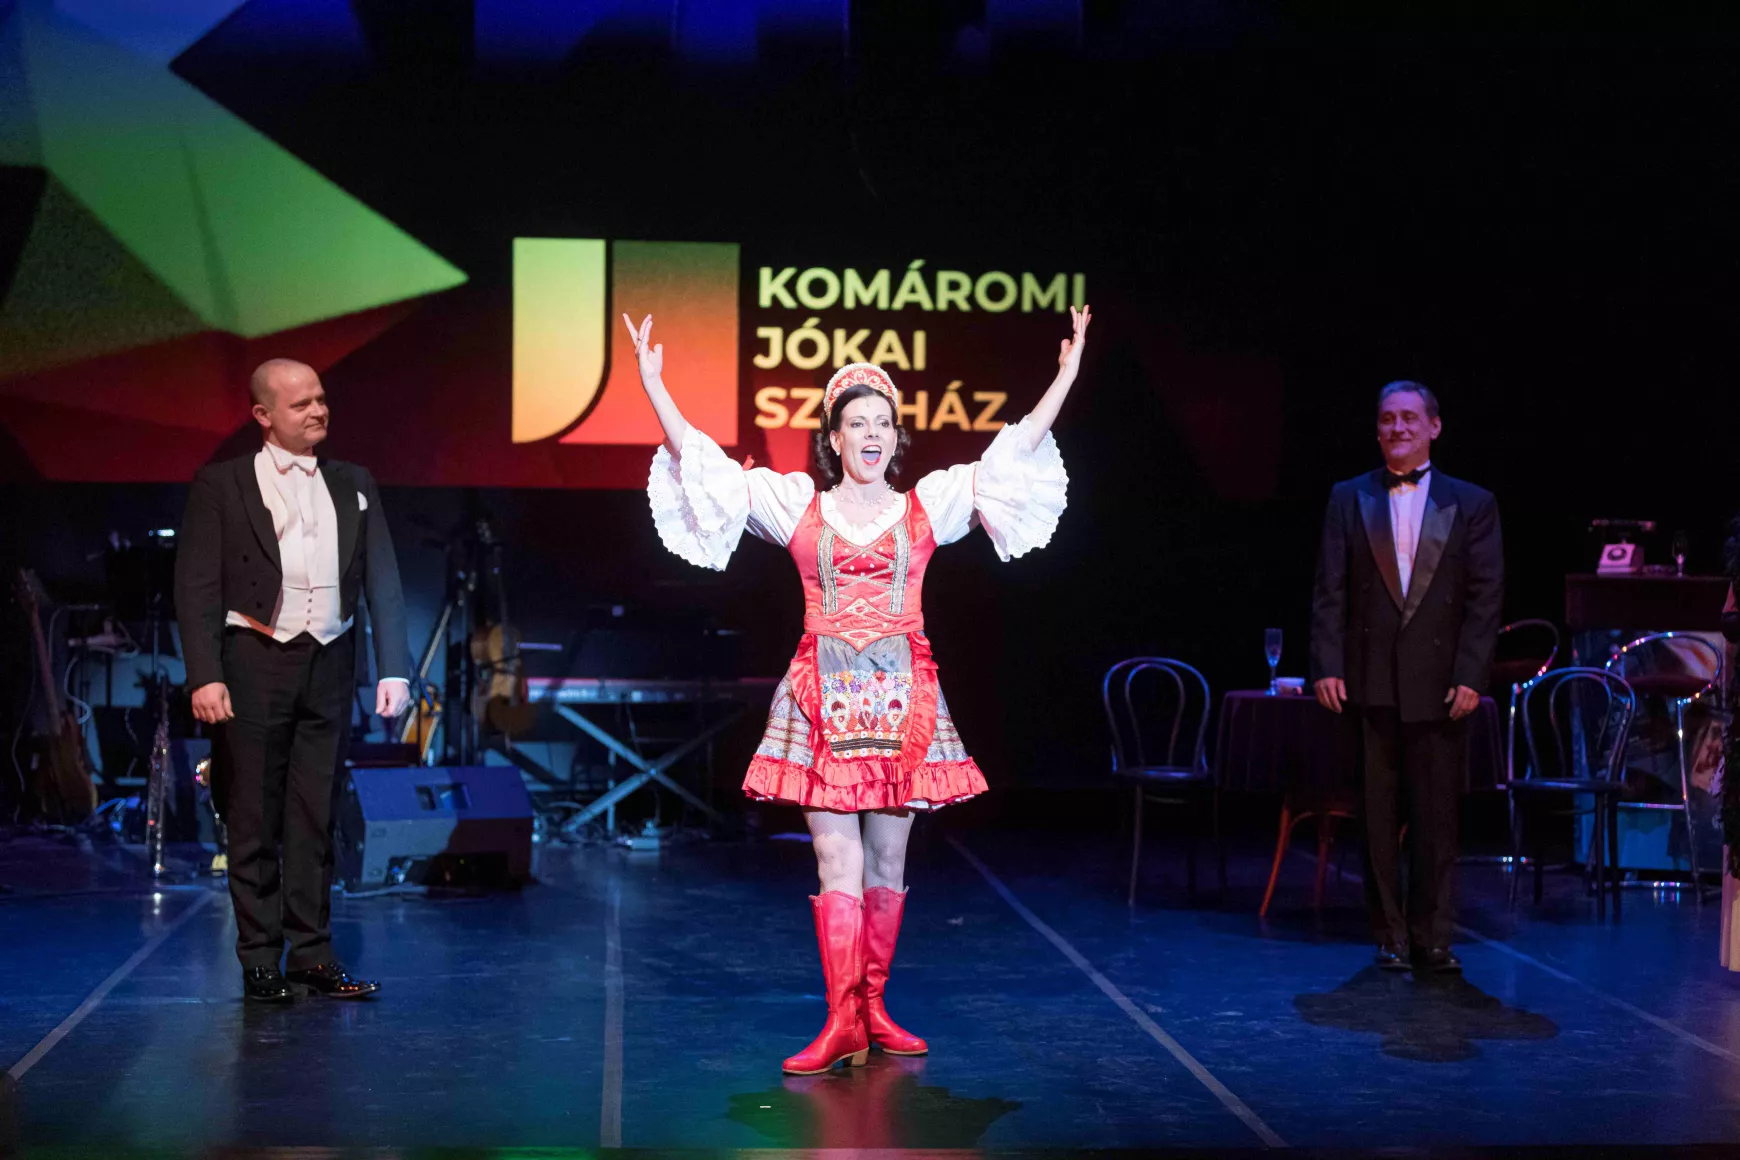 Kétfelvonásos „hetvenkedés“ a Komáromi Jókai Színházban KÉPEKKEL